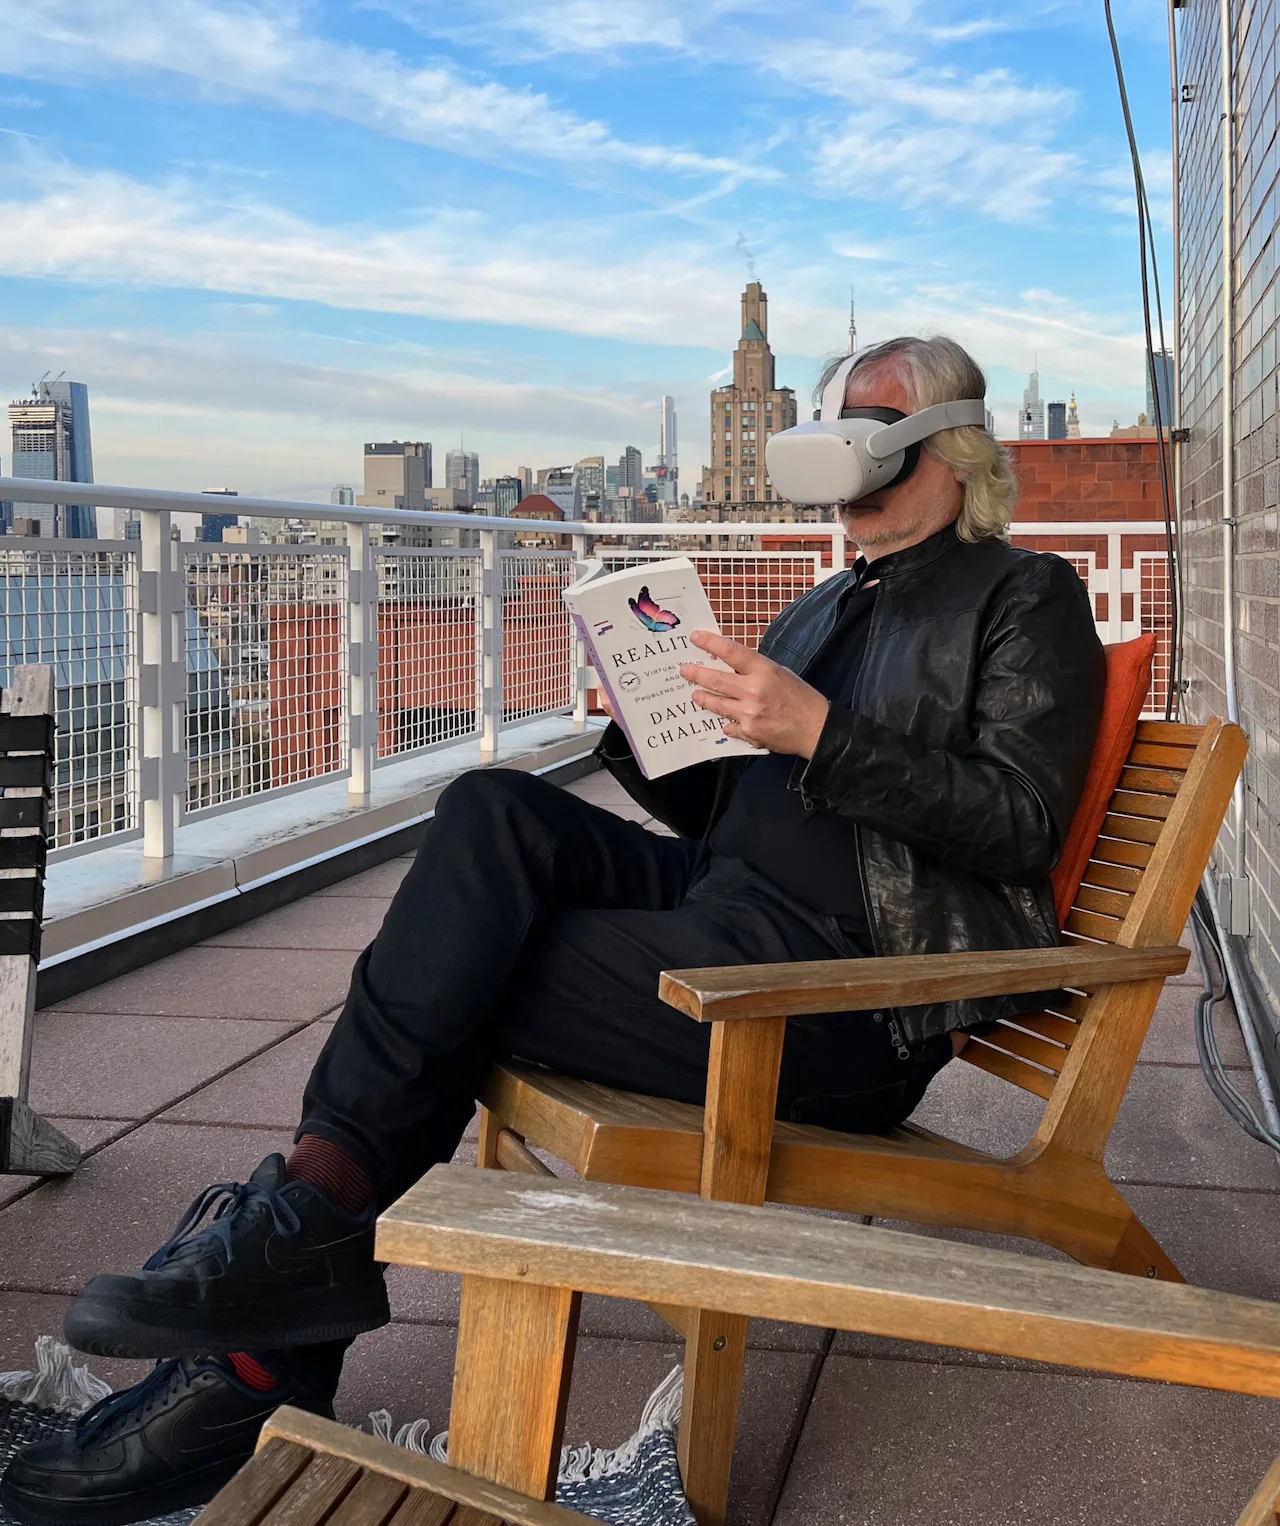 David Chalmers o virtuální realitě